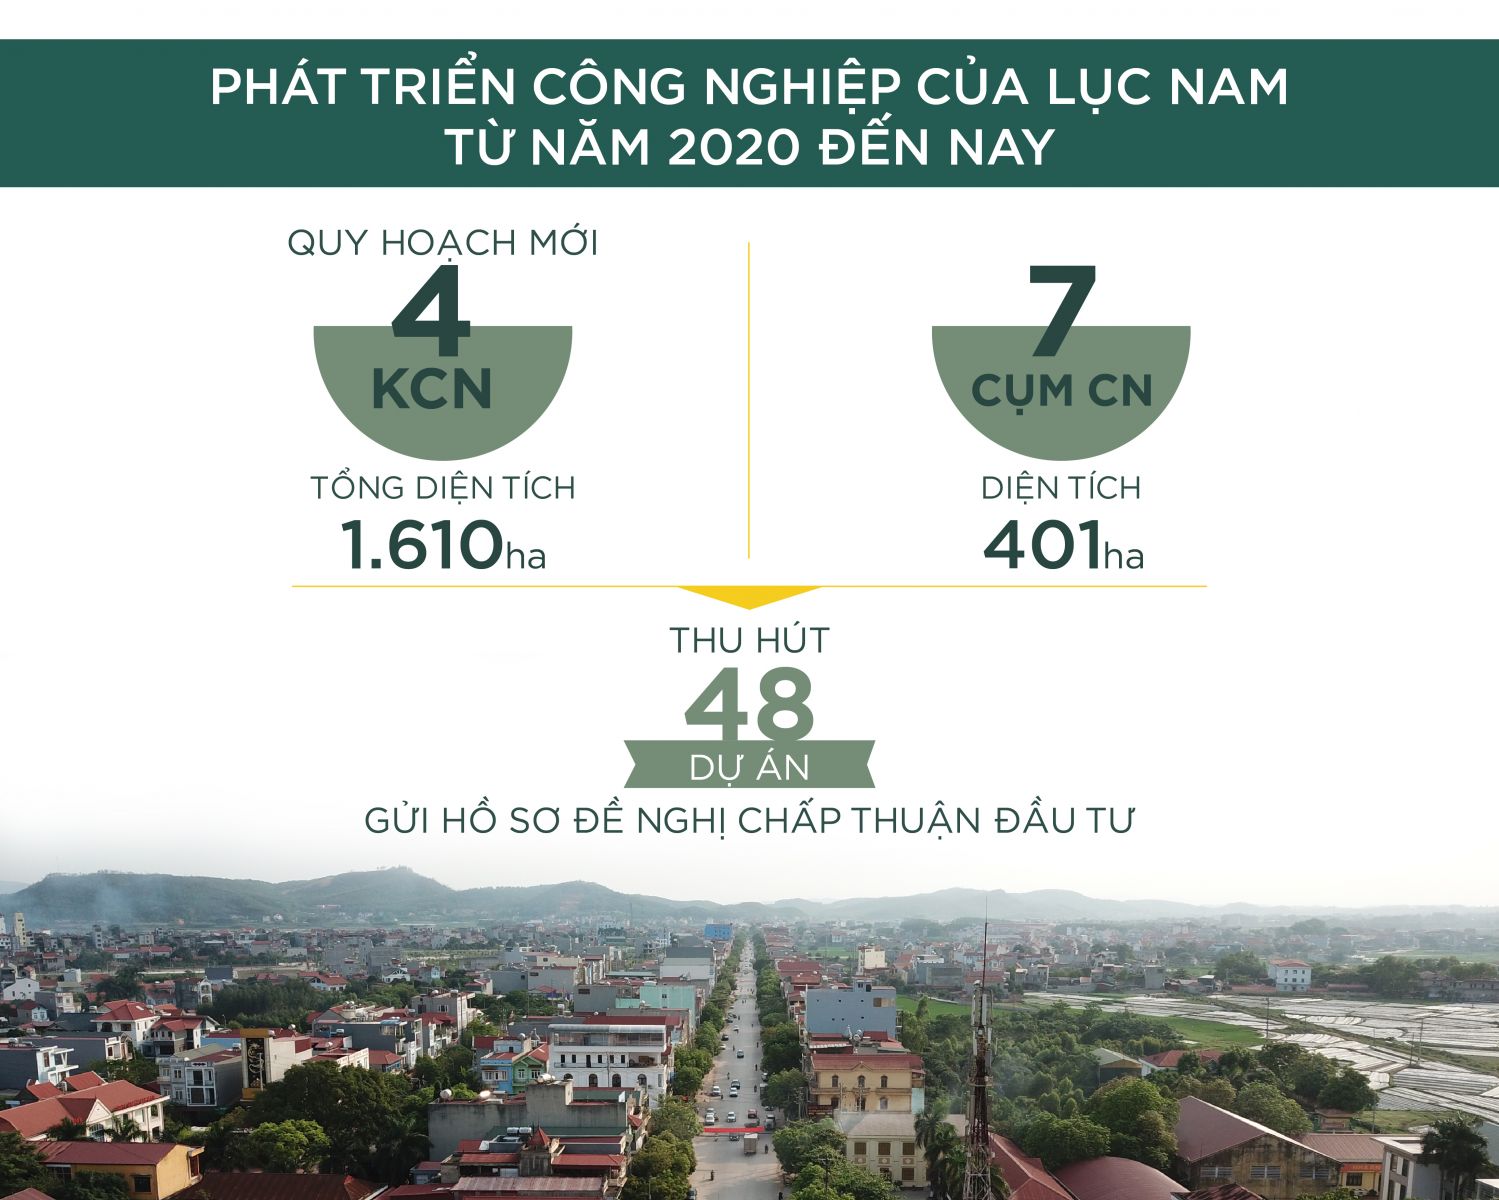 Phát triển công nghiệp huyện Lục Nam, Bắc Giang